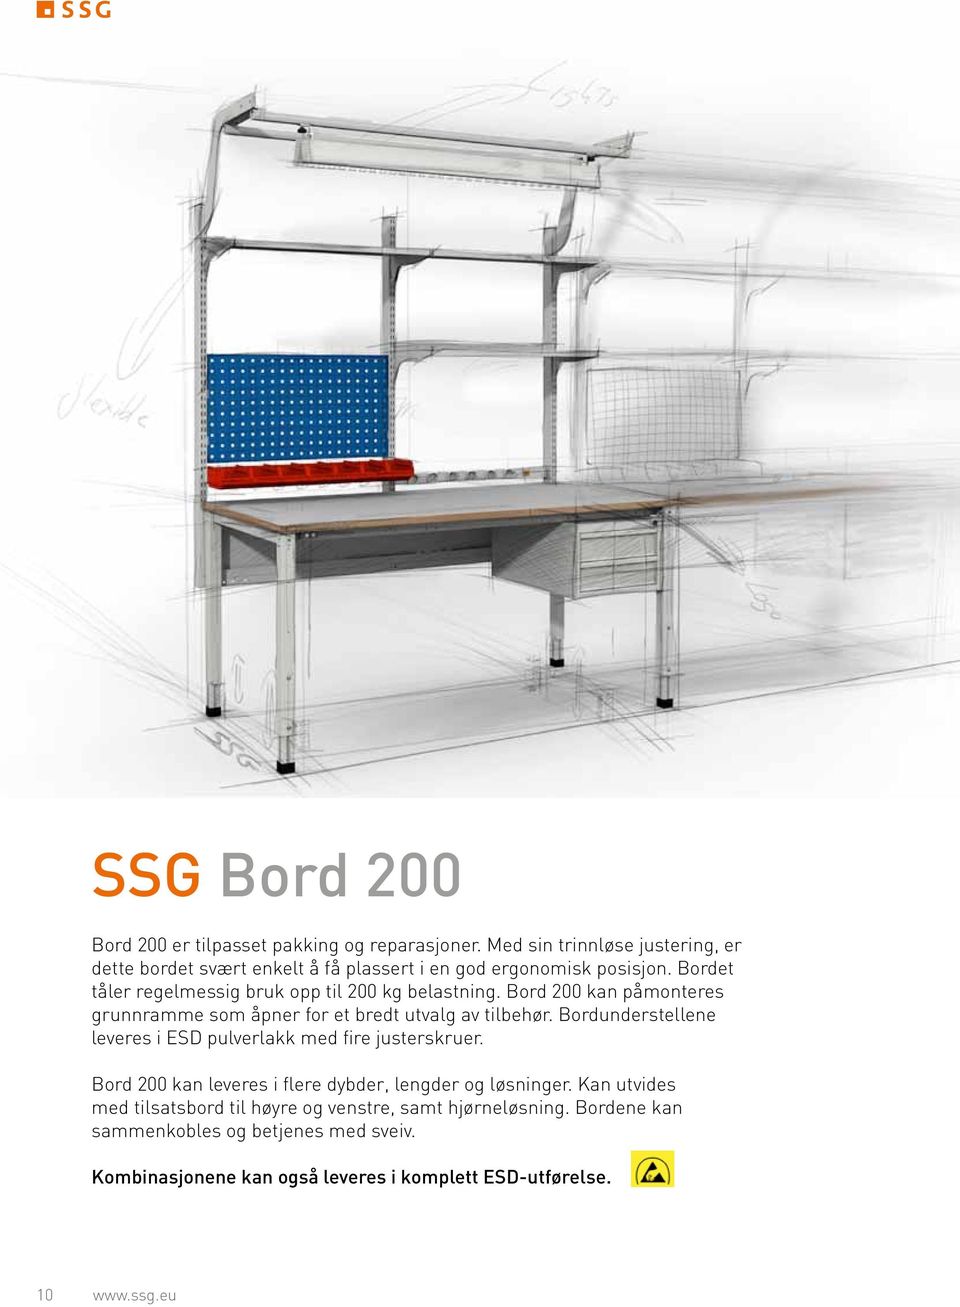 Bordet tåler regelmessig bruk opp til 200 kg belastning. Bord 200 kan påmonteres grunnramme som åpner for et bredt utvalg av tilbehør.